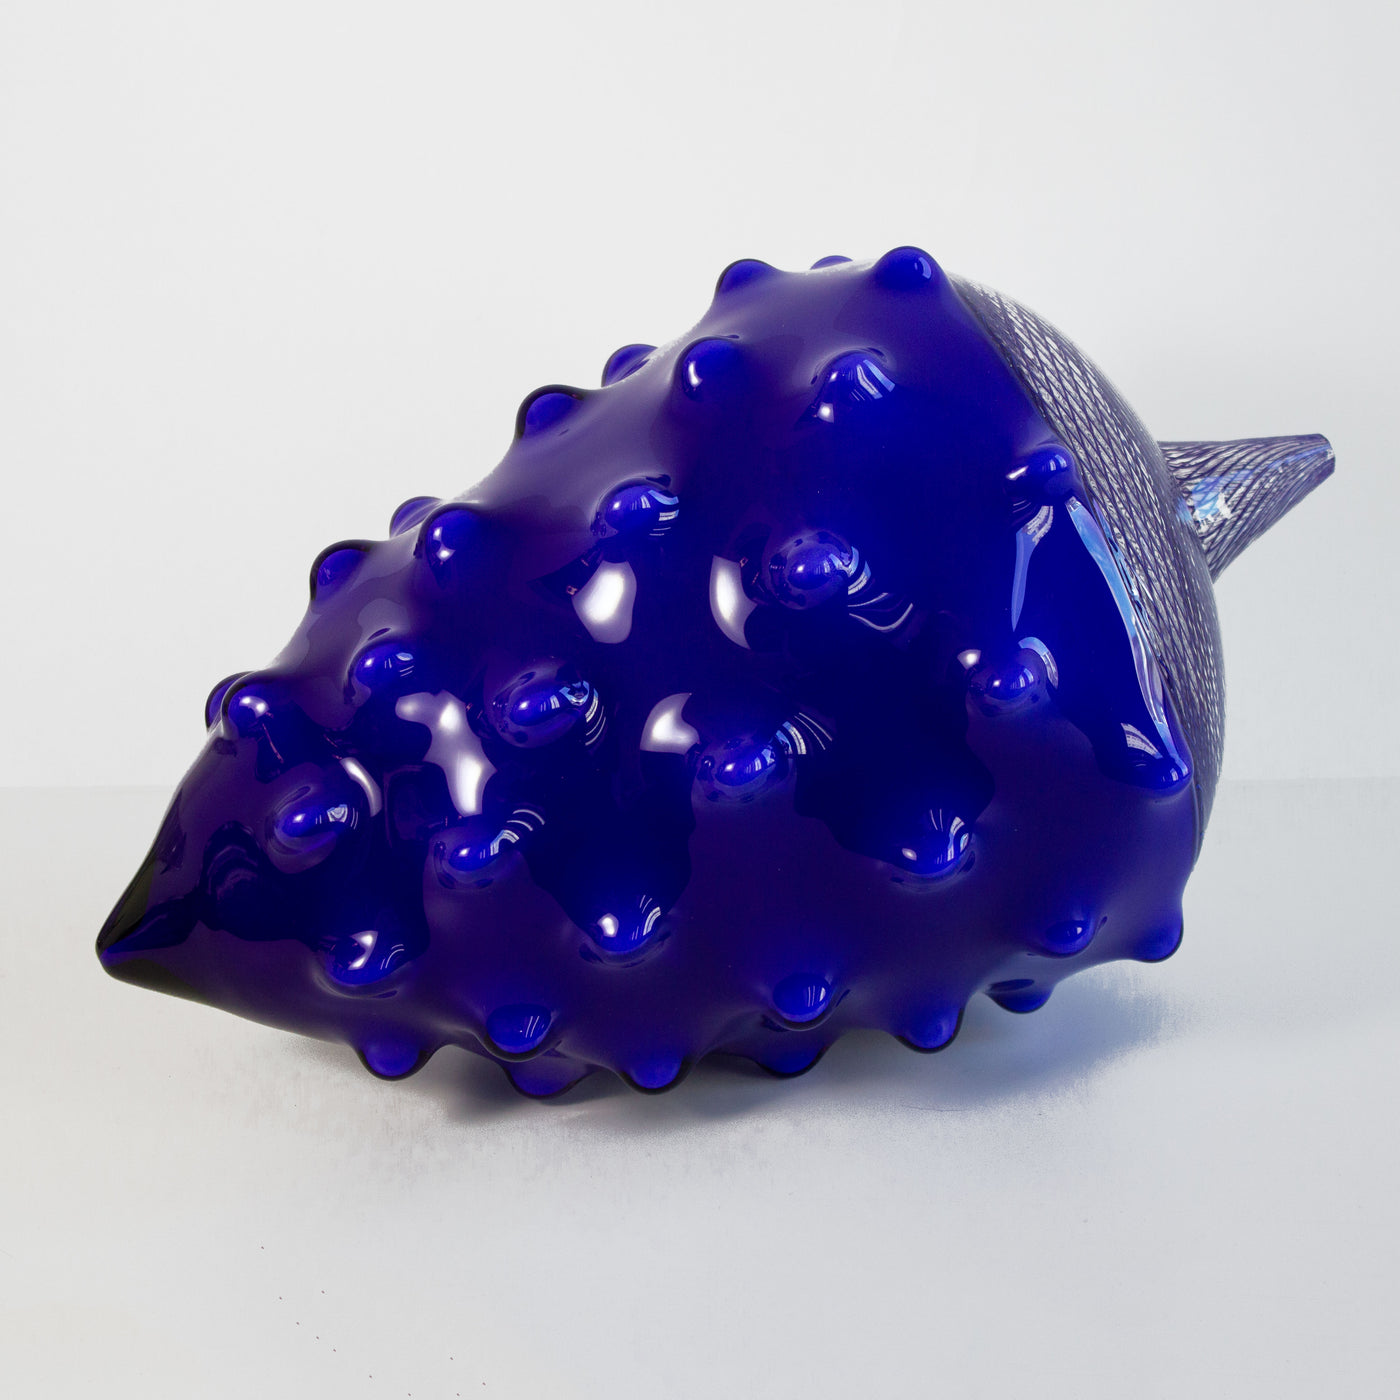 Sculpture en verre soufflé bleu de la forme d'une noix.